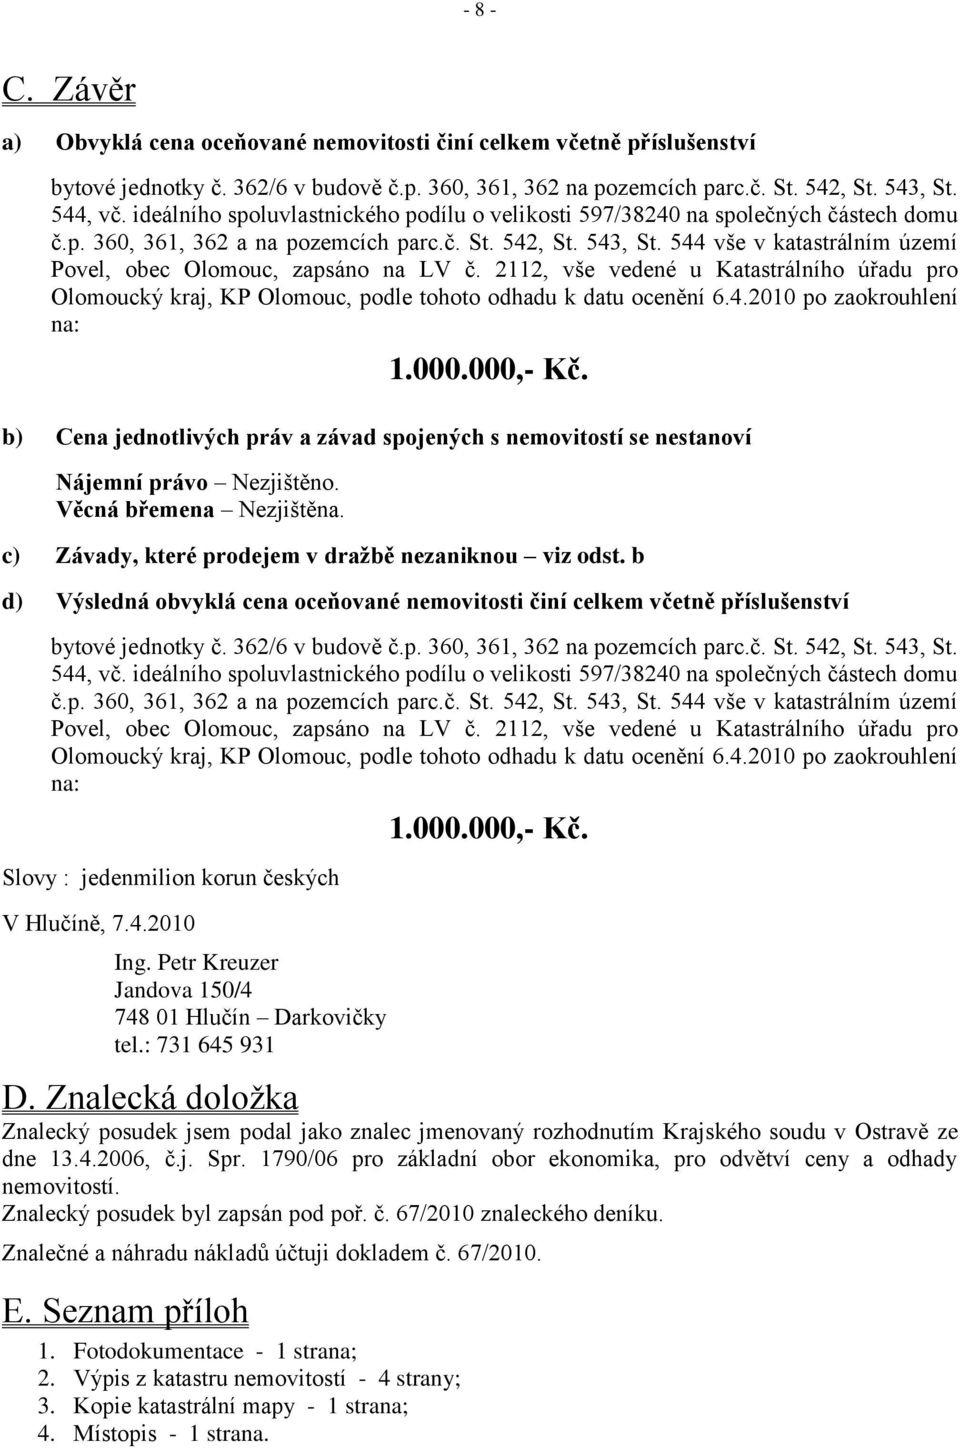 544 vše v katastrálním území Povel, obec Olomouc, zapsáno na LV č. 2112, vše vedené u Katastrálního úřadu pro Olomoucký kraj, KP Olomouc, podle tohoto odhadu k datu ocenění 6.4.2010 po zaokrouhlení na: 1.